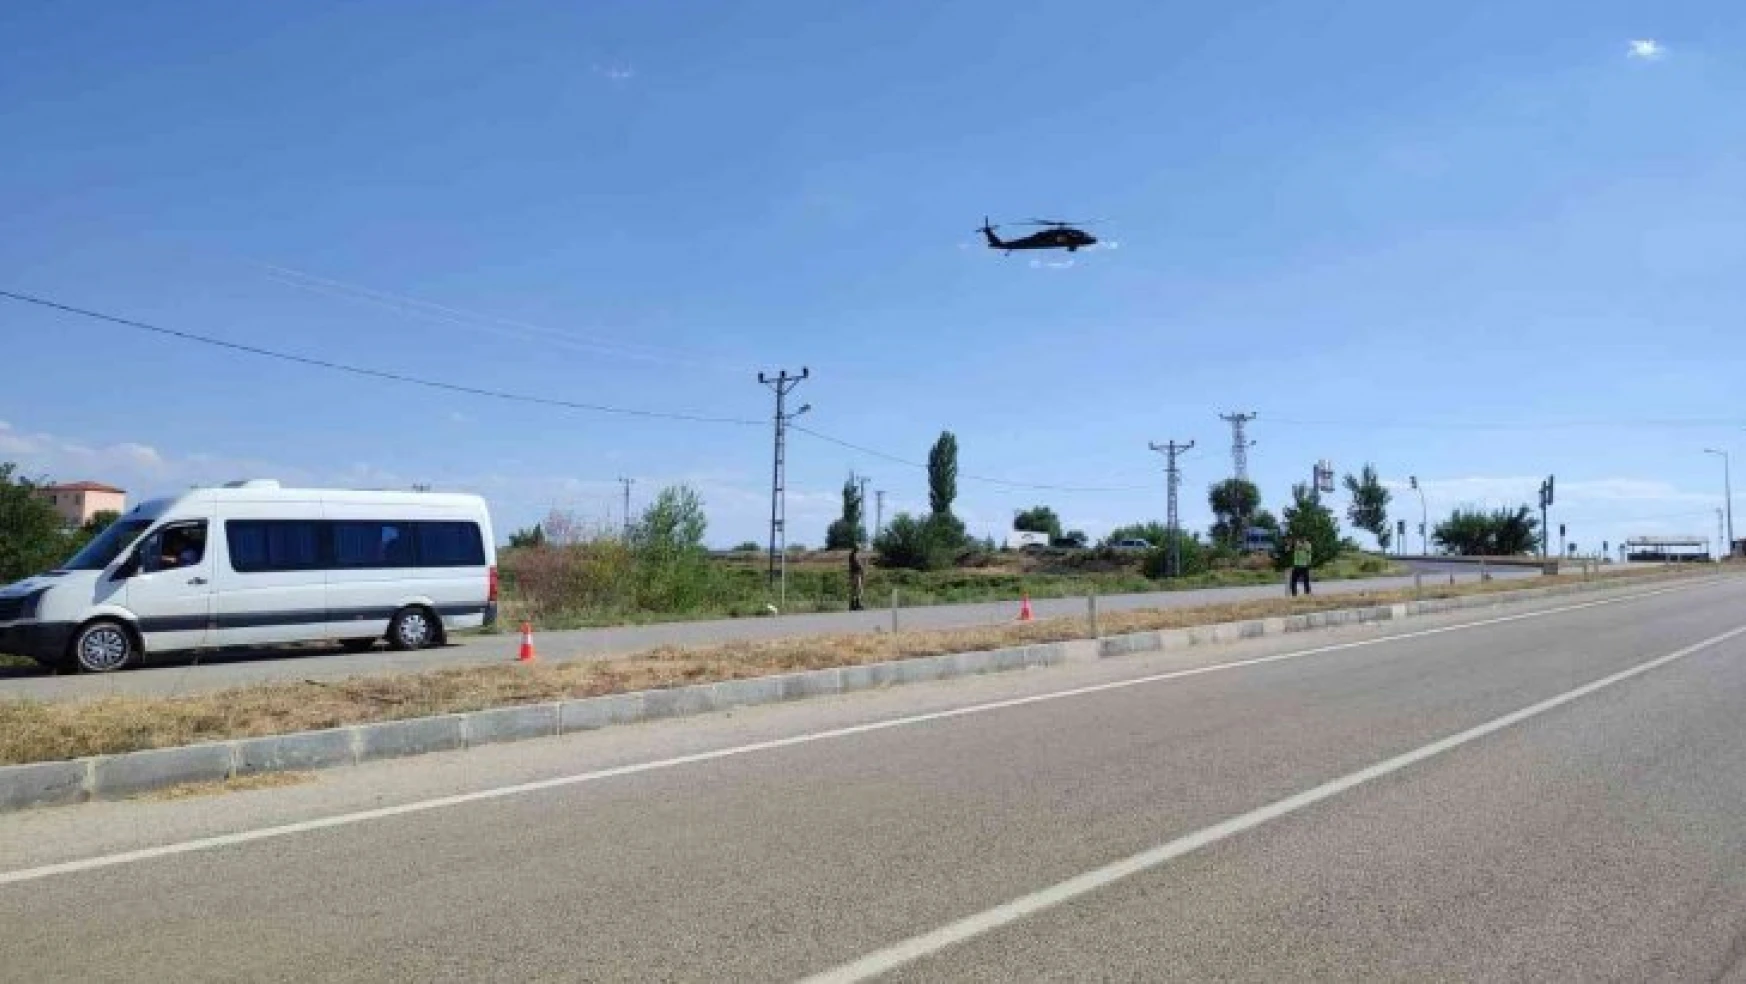 Malatya'da helikopter destekli trafik denetimi